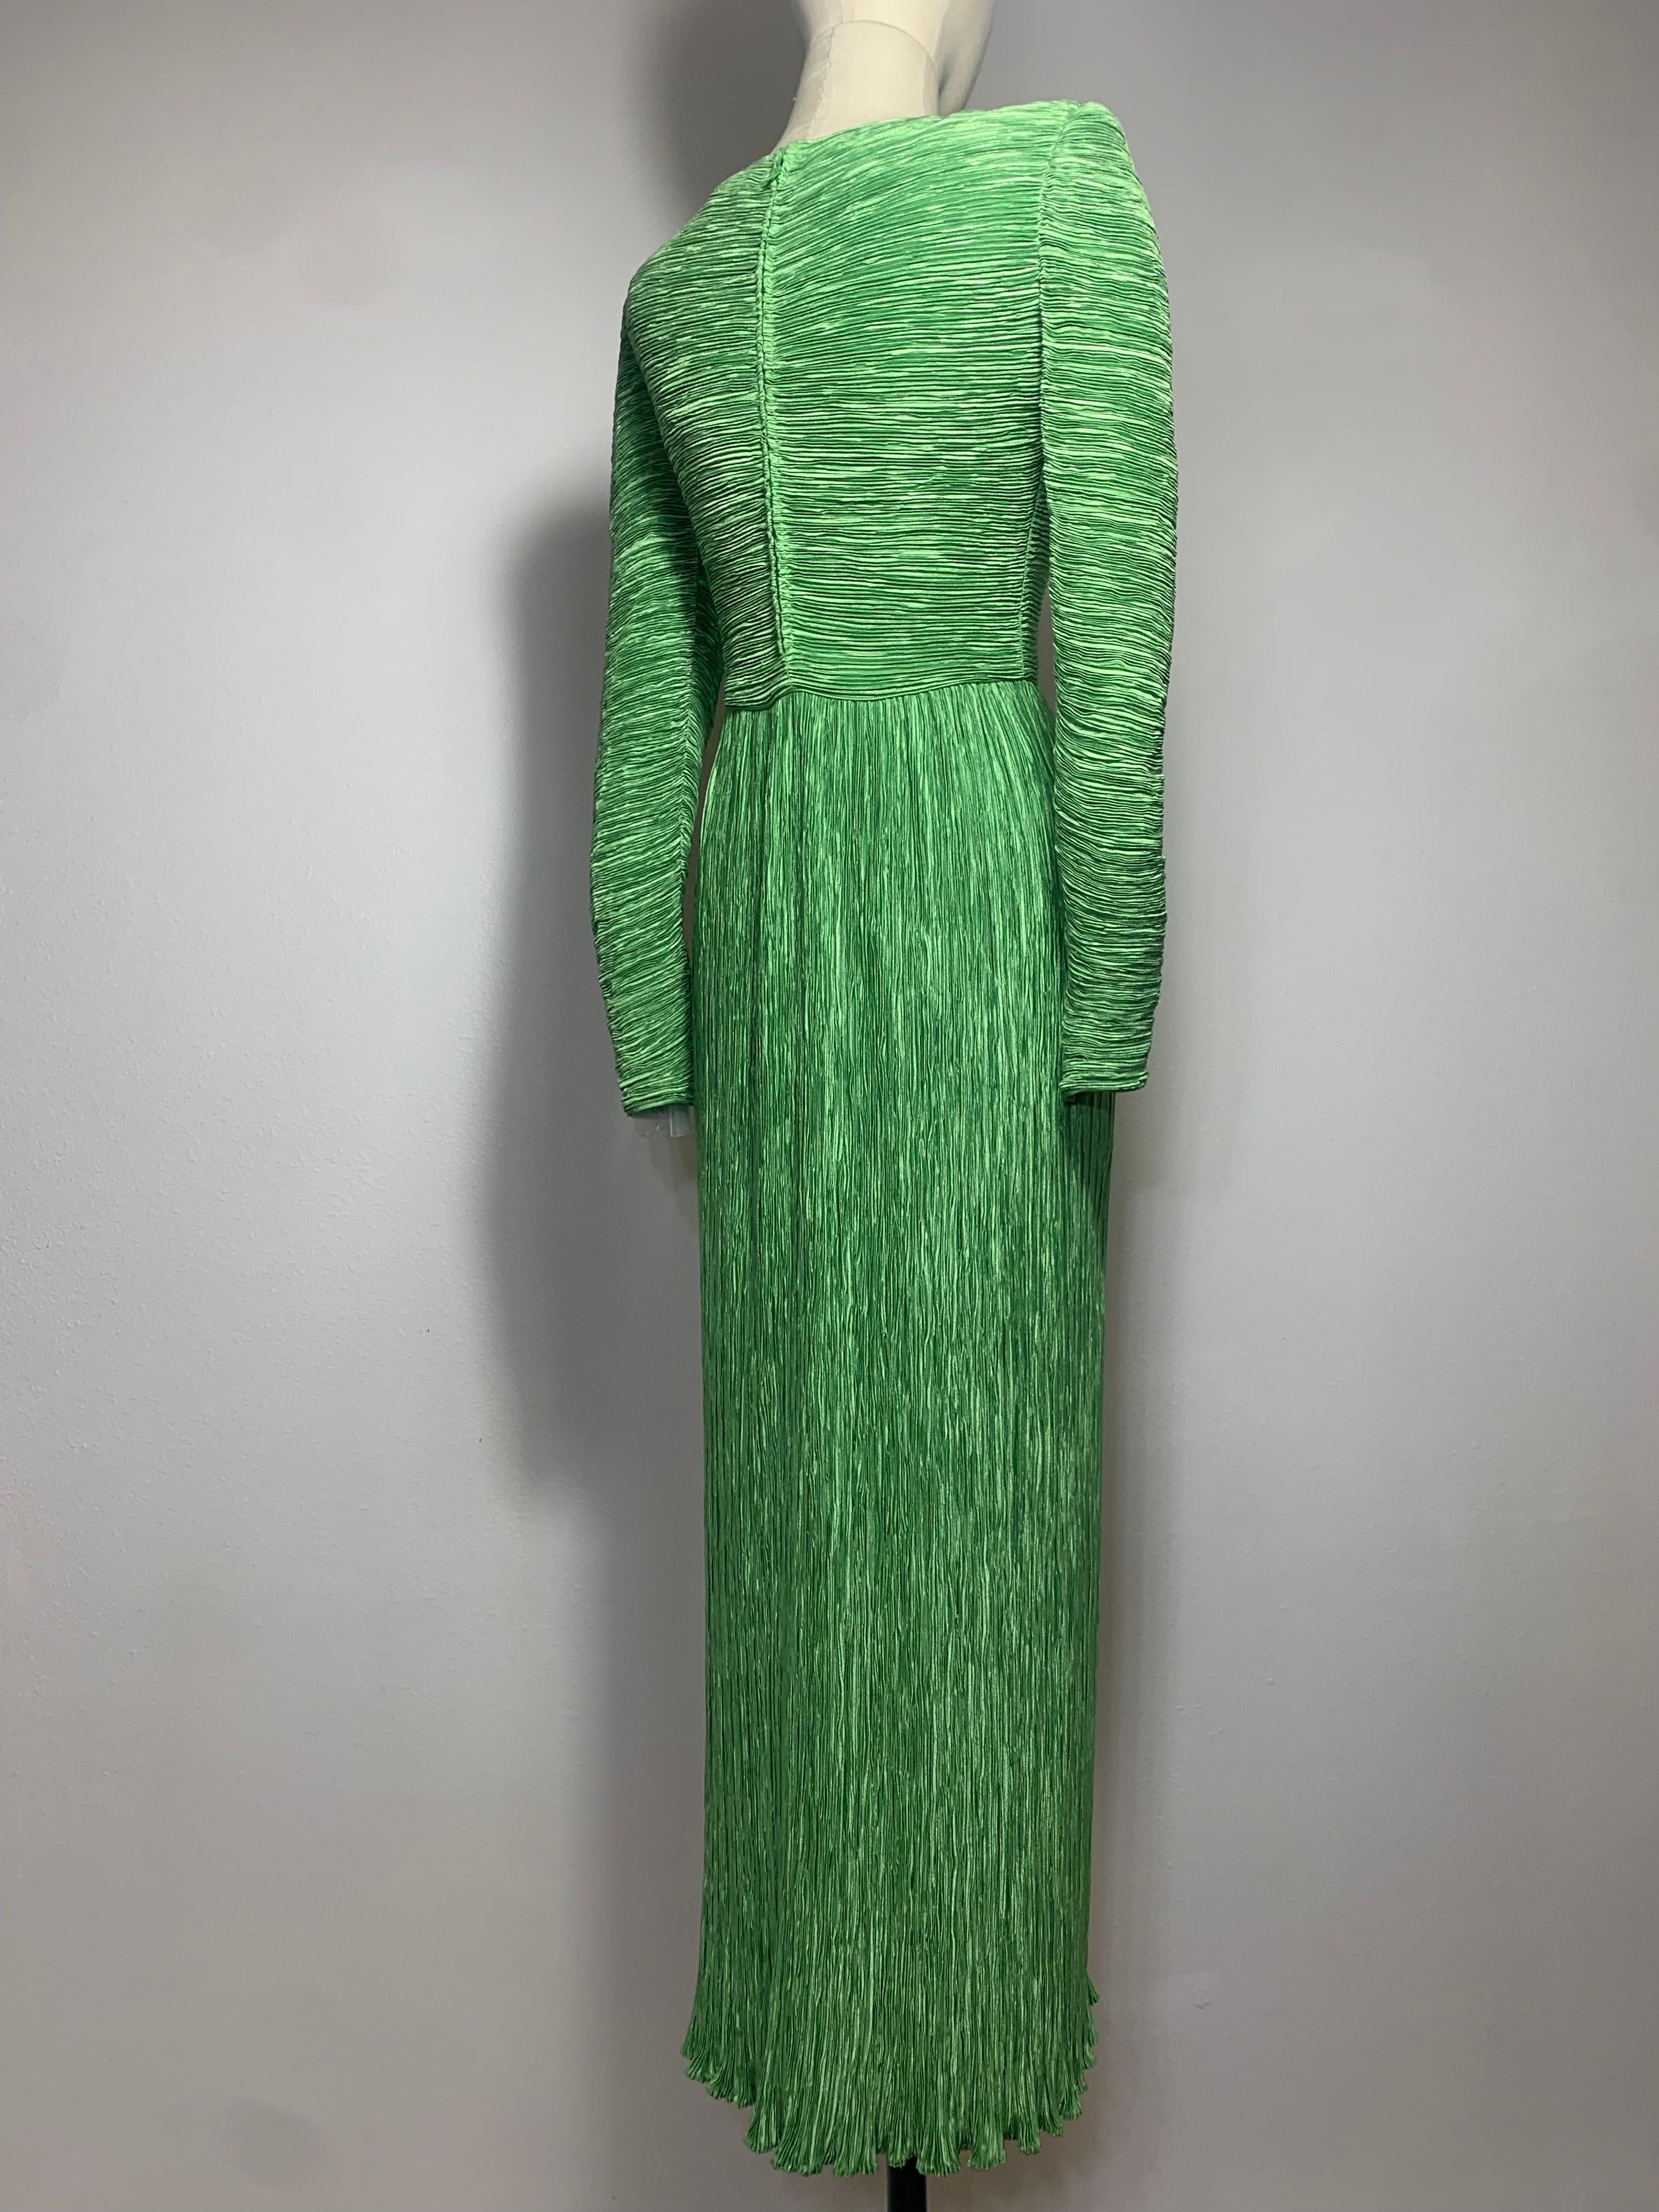 Robe à colonnes en soie vert jade, style Fortuny, avec manches longues, Mary McFadden, années 1980 :  Signature McFadden avec un corsage drapé asymétrique et de longues manches fuselées. Le corsage est doublé, la jupe ne l'est pas, pour faciliter